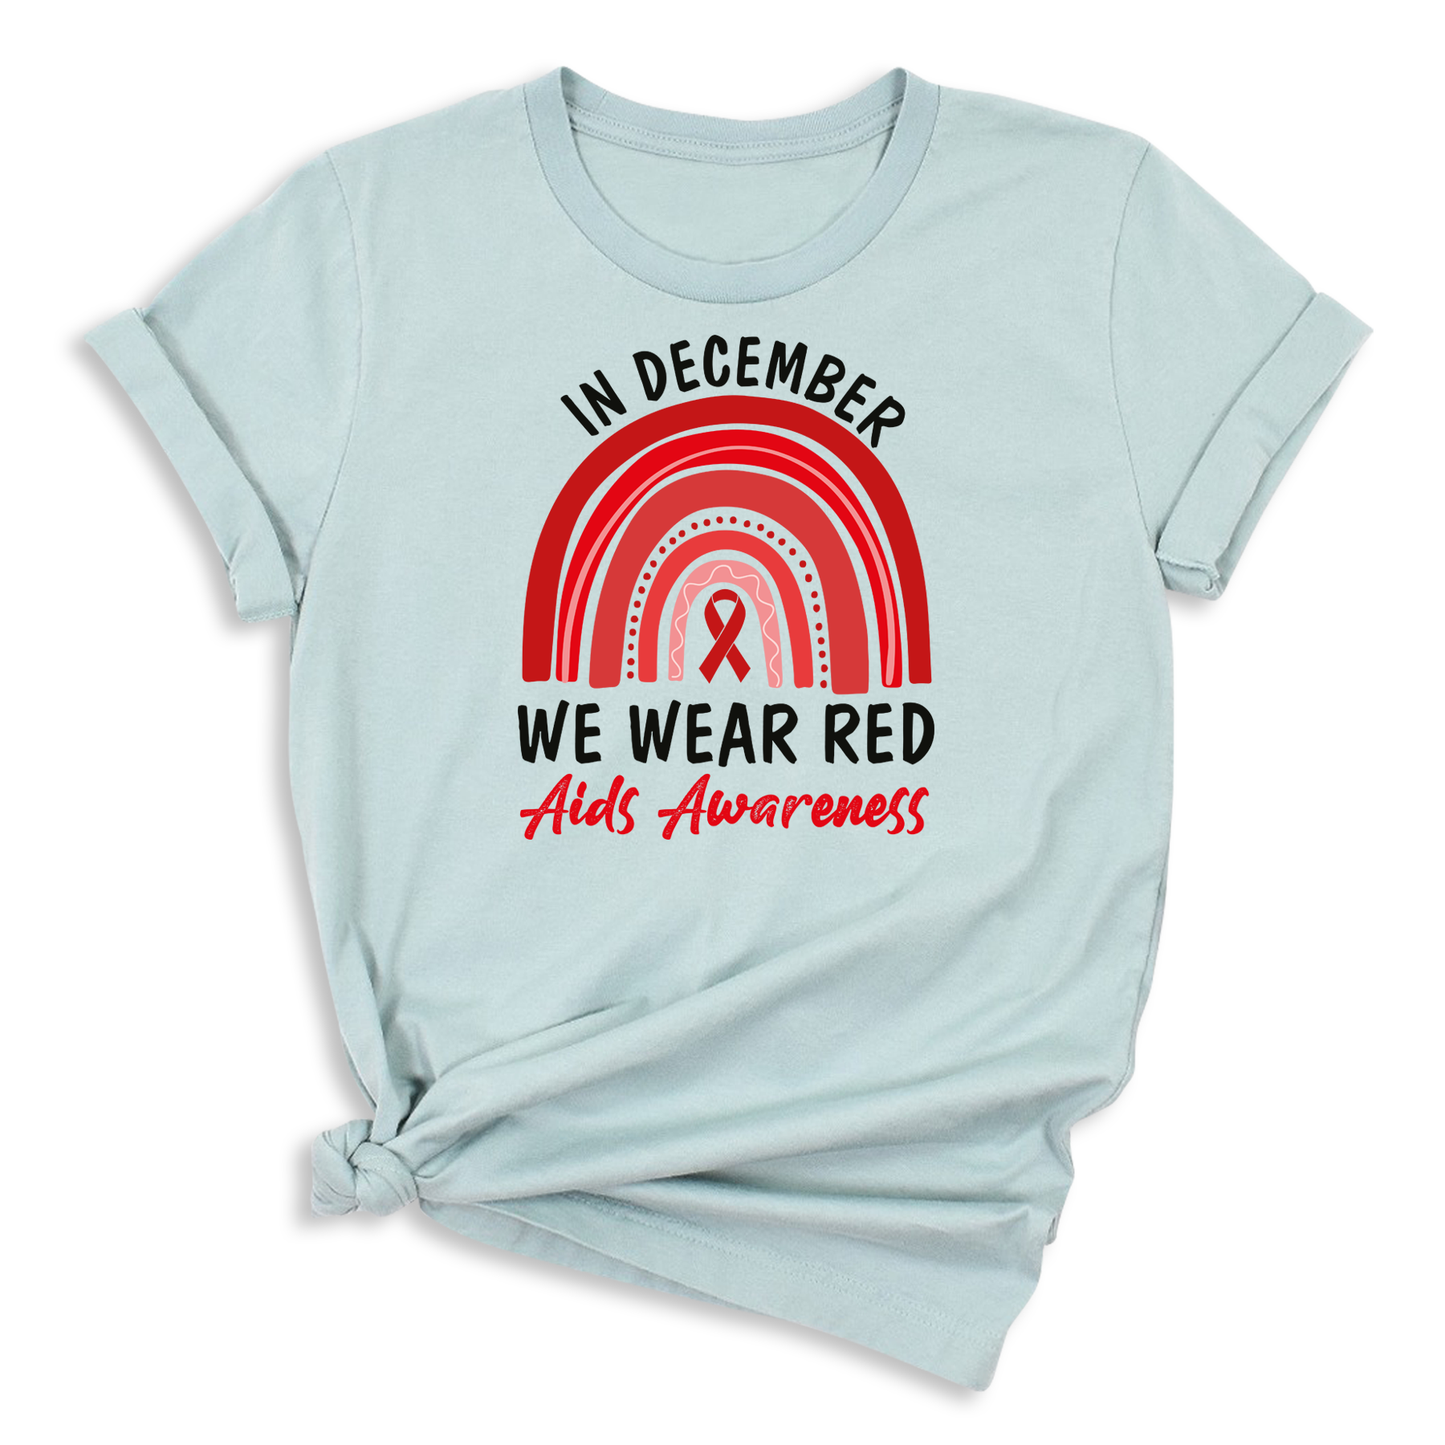 AIDS Awareness Shirts